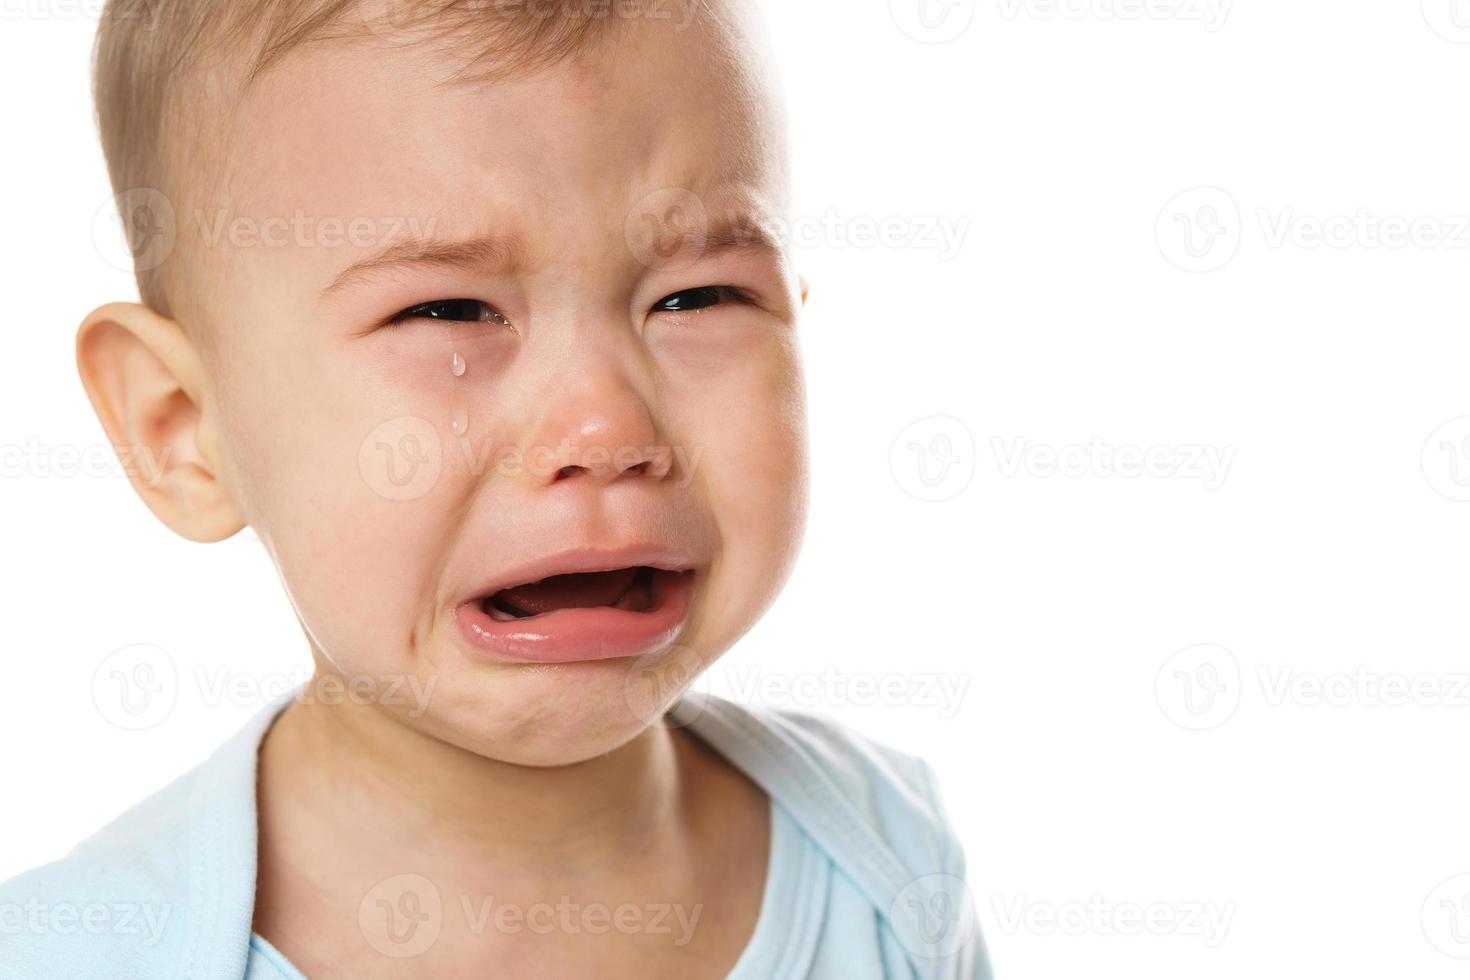 gros plan du visage d'un petit garçon qui pleure en barboteuse. photo